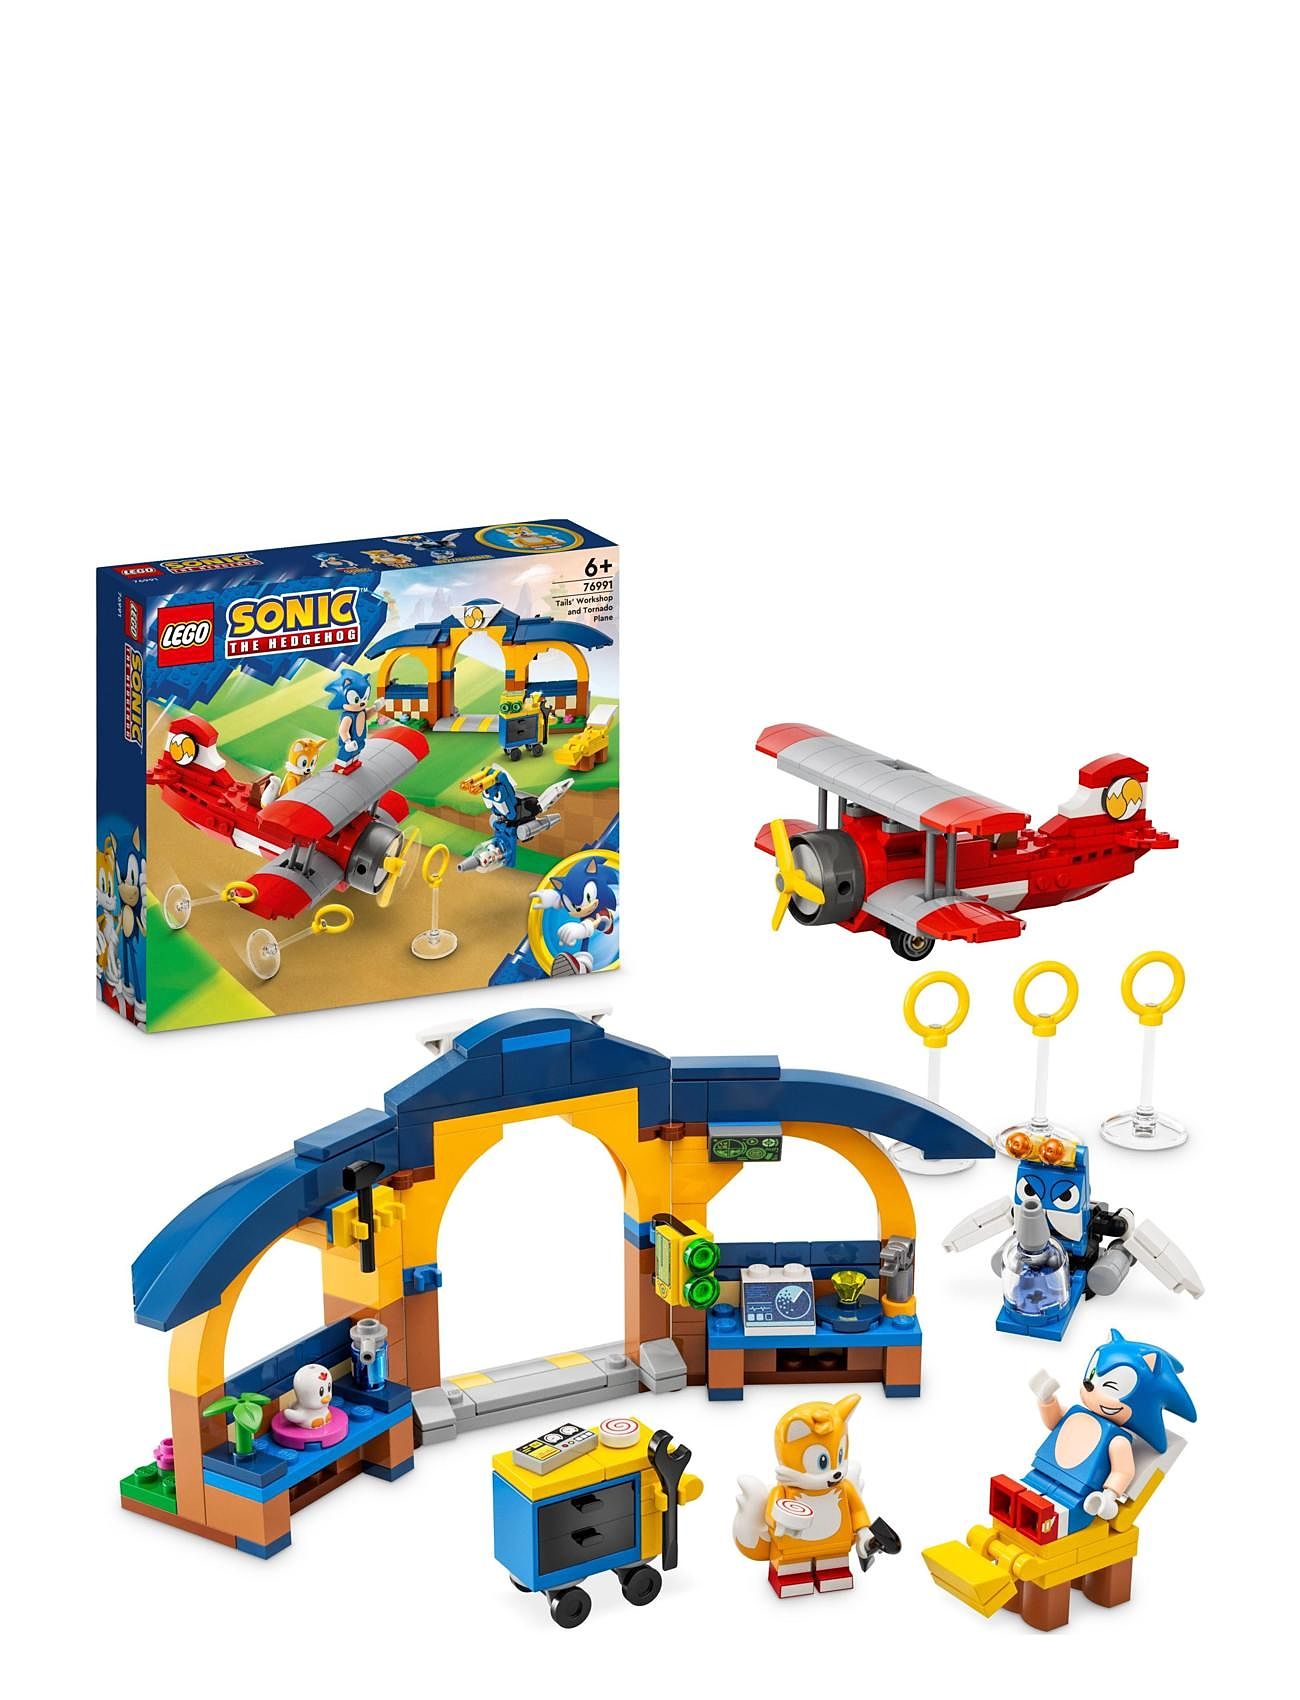 Tbd-Lemon2 Toys Lego Toys Lego Sonic The Hedgehog Multi/patterned LEGO